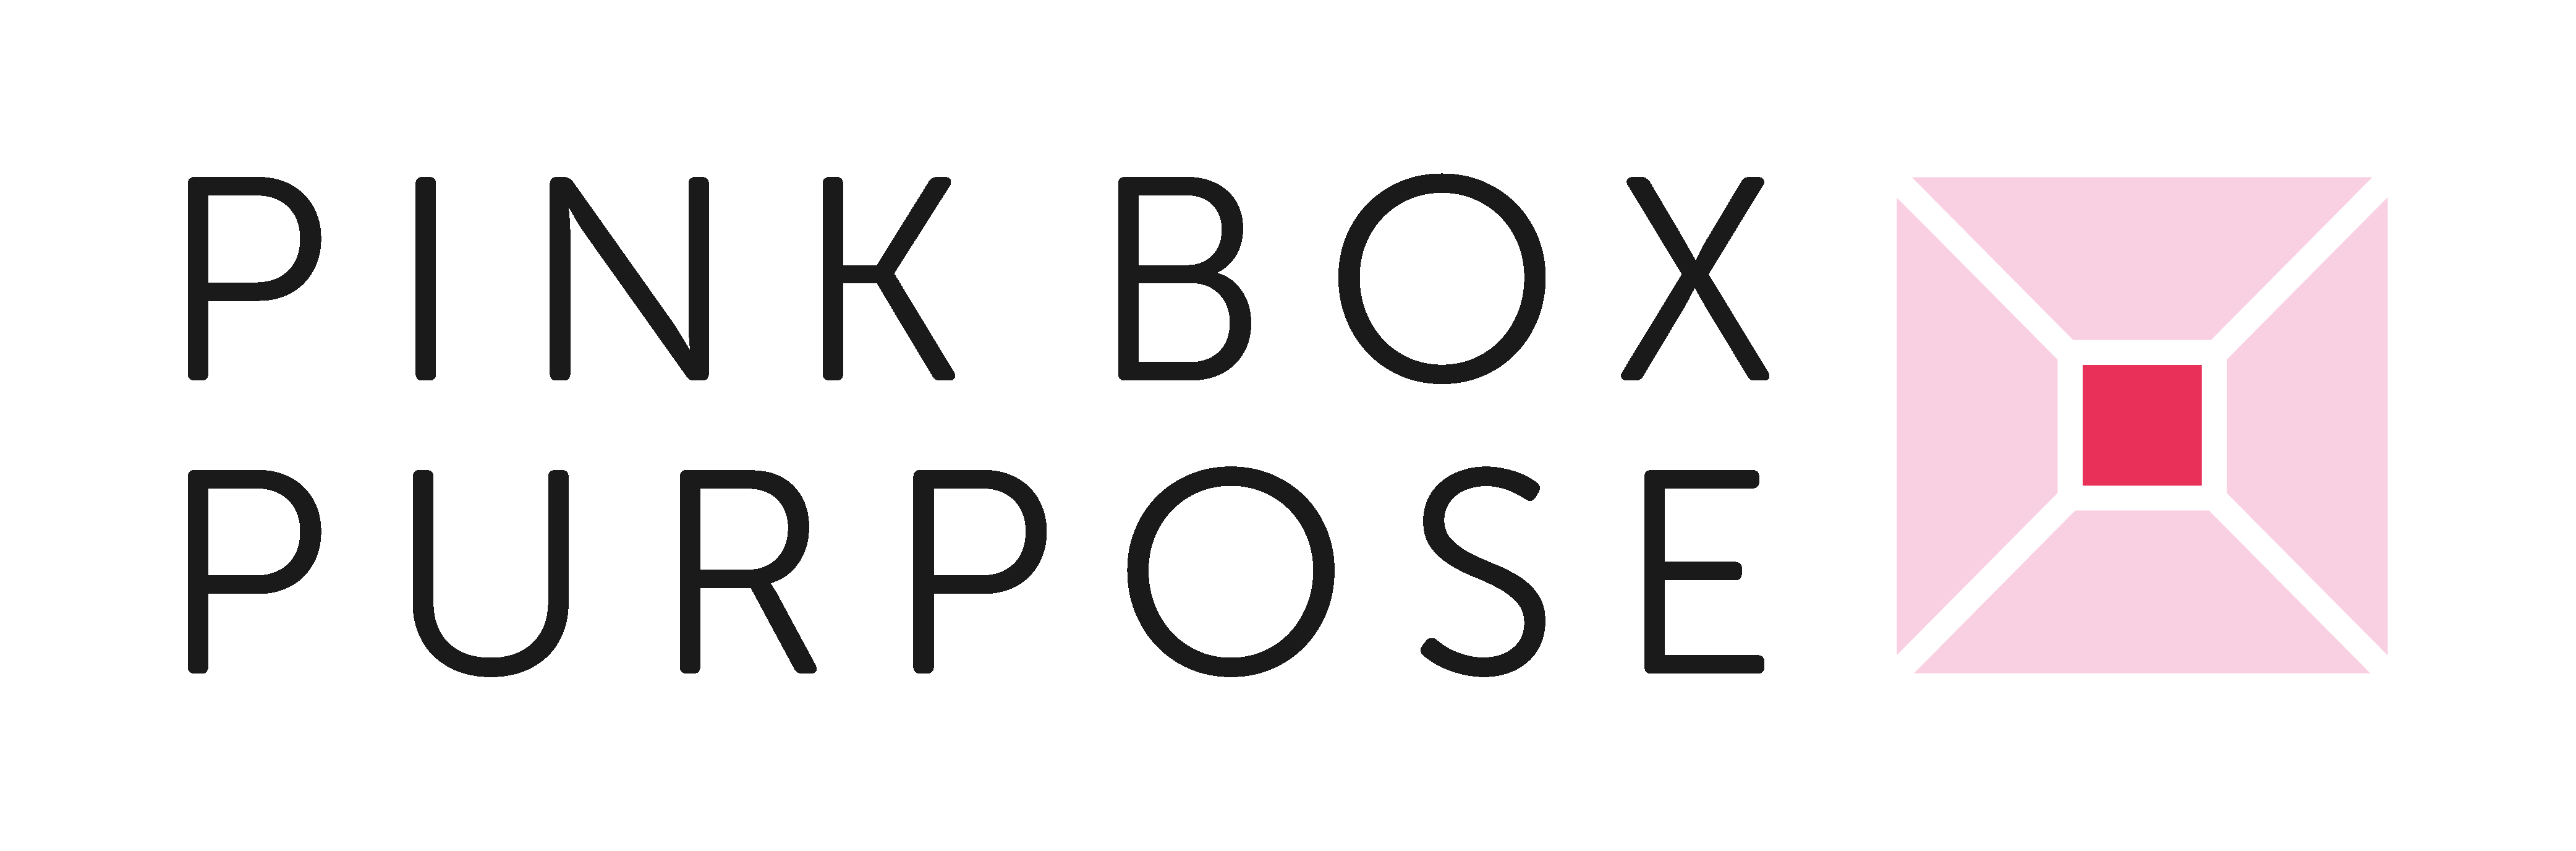 Pink Box Purpose, Inc. logo